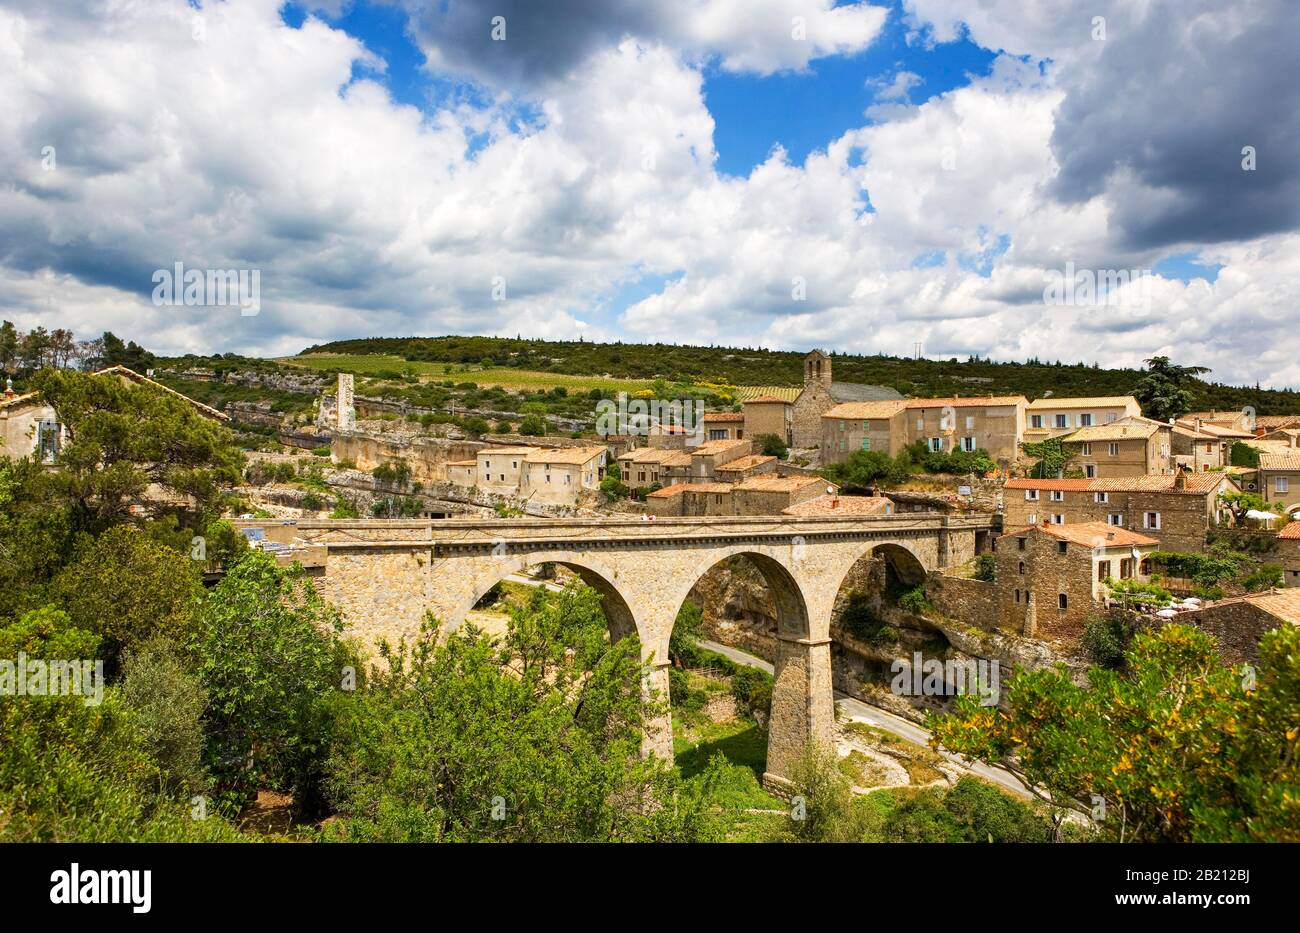 Pont sur la Cesse, Minerve, région d'Occitania, département d'Herault, Languedoc-Roussillon, France Banque D'Images